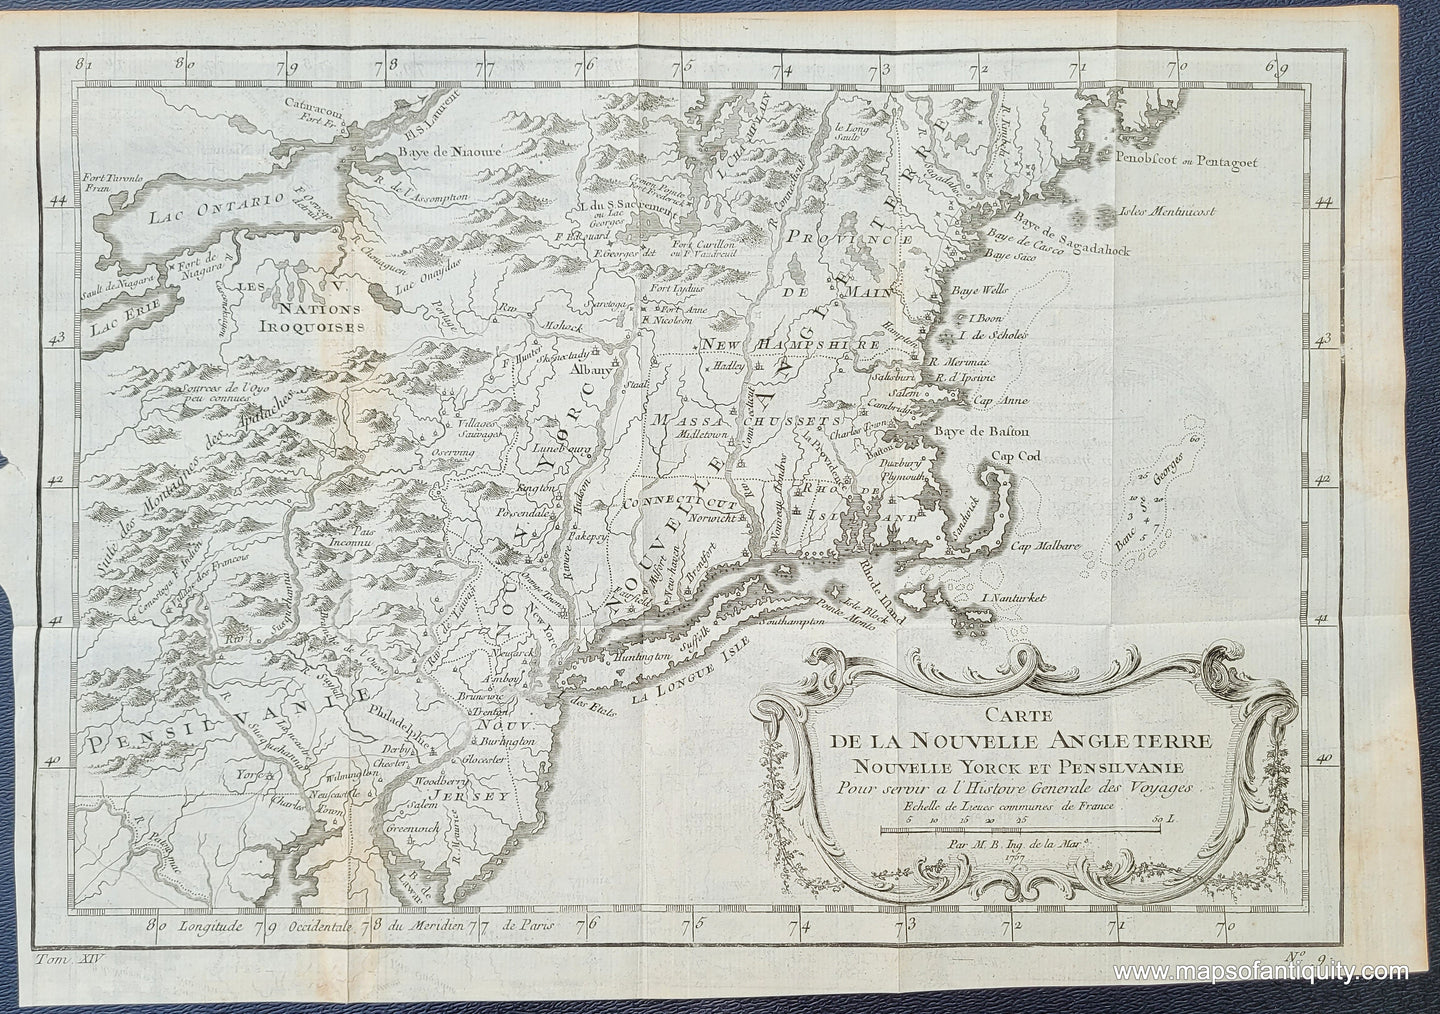 Antique-Map-Massachusetts-Maine-New-Hampshire-Connecticut-Rhode-Island-New-York-New-Jersey-Pennsylvania-Carte-de-la-Nouvelle-Angleterre-Nouvelle-Yorck-et-Pensilvanie.-Pour-servir-a-l'Histoire-Generale-des-Voyages-1757-Bellin-Maps-of-Antiquity